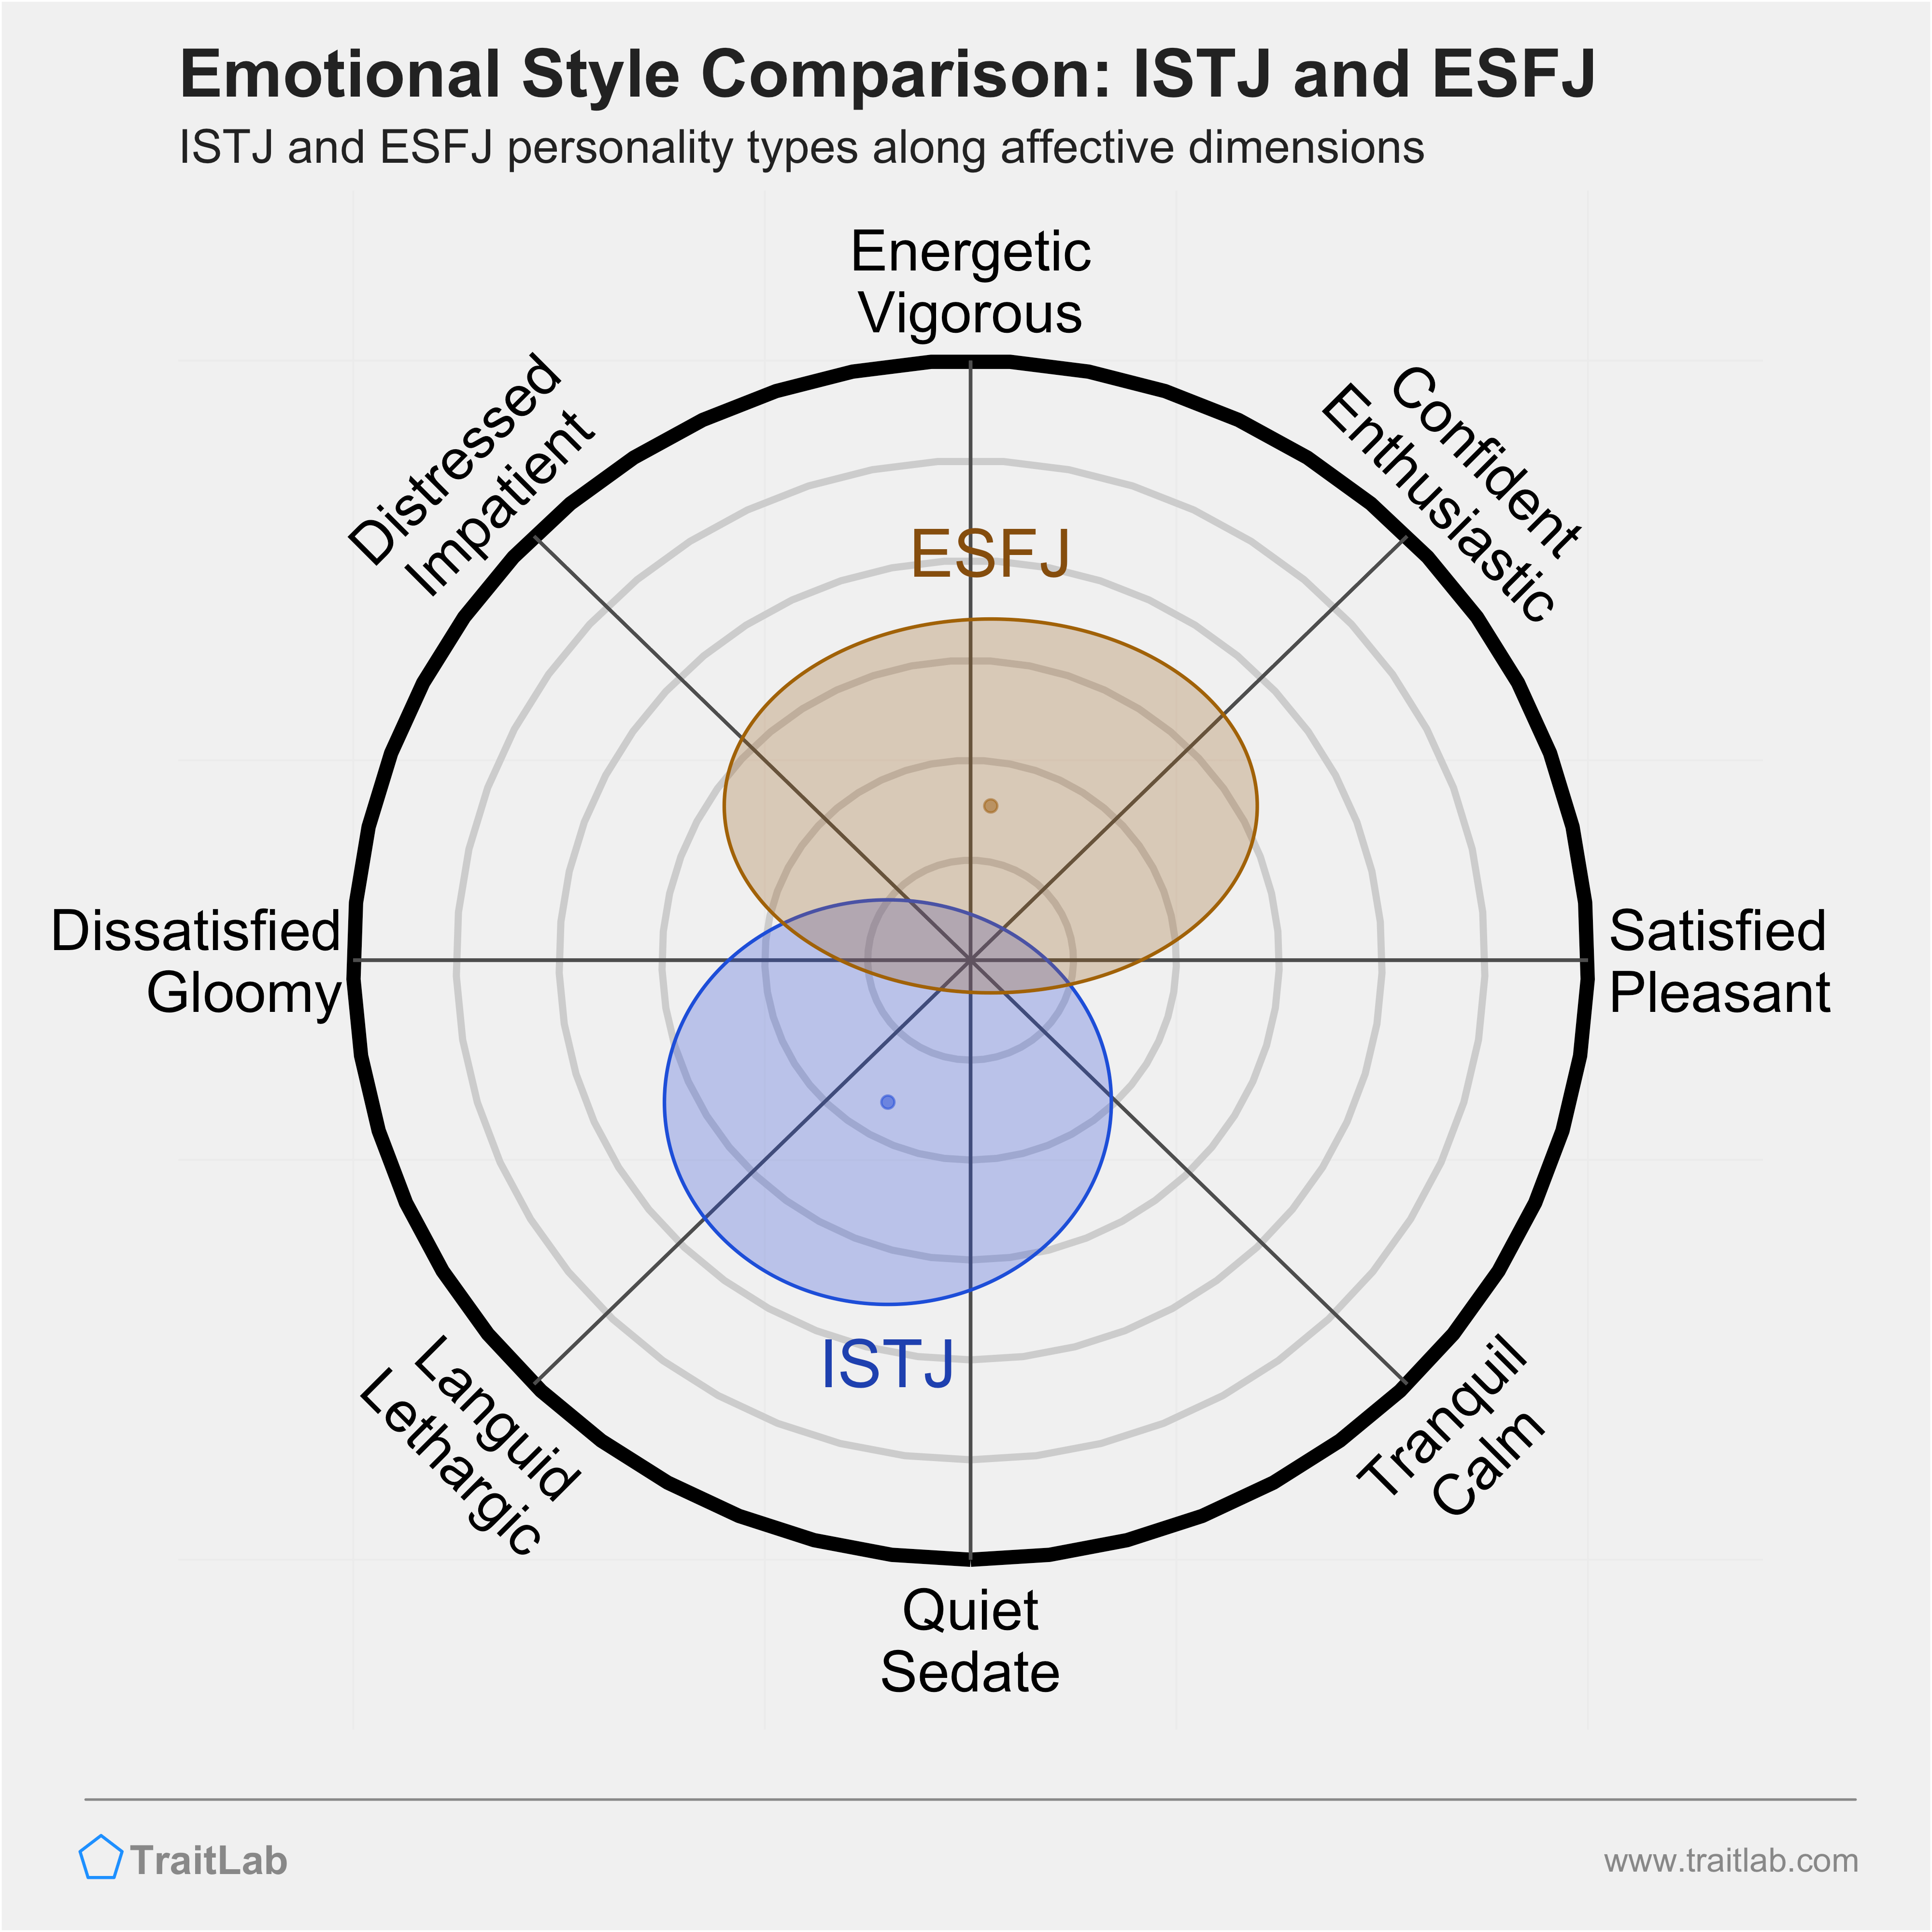 ISTJ and ESFJ comparison across emotional (affective) dimensions